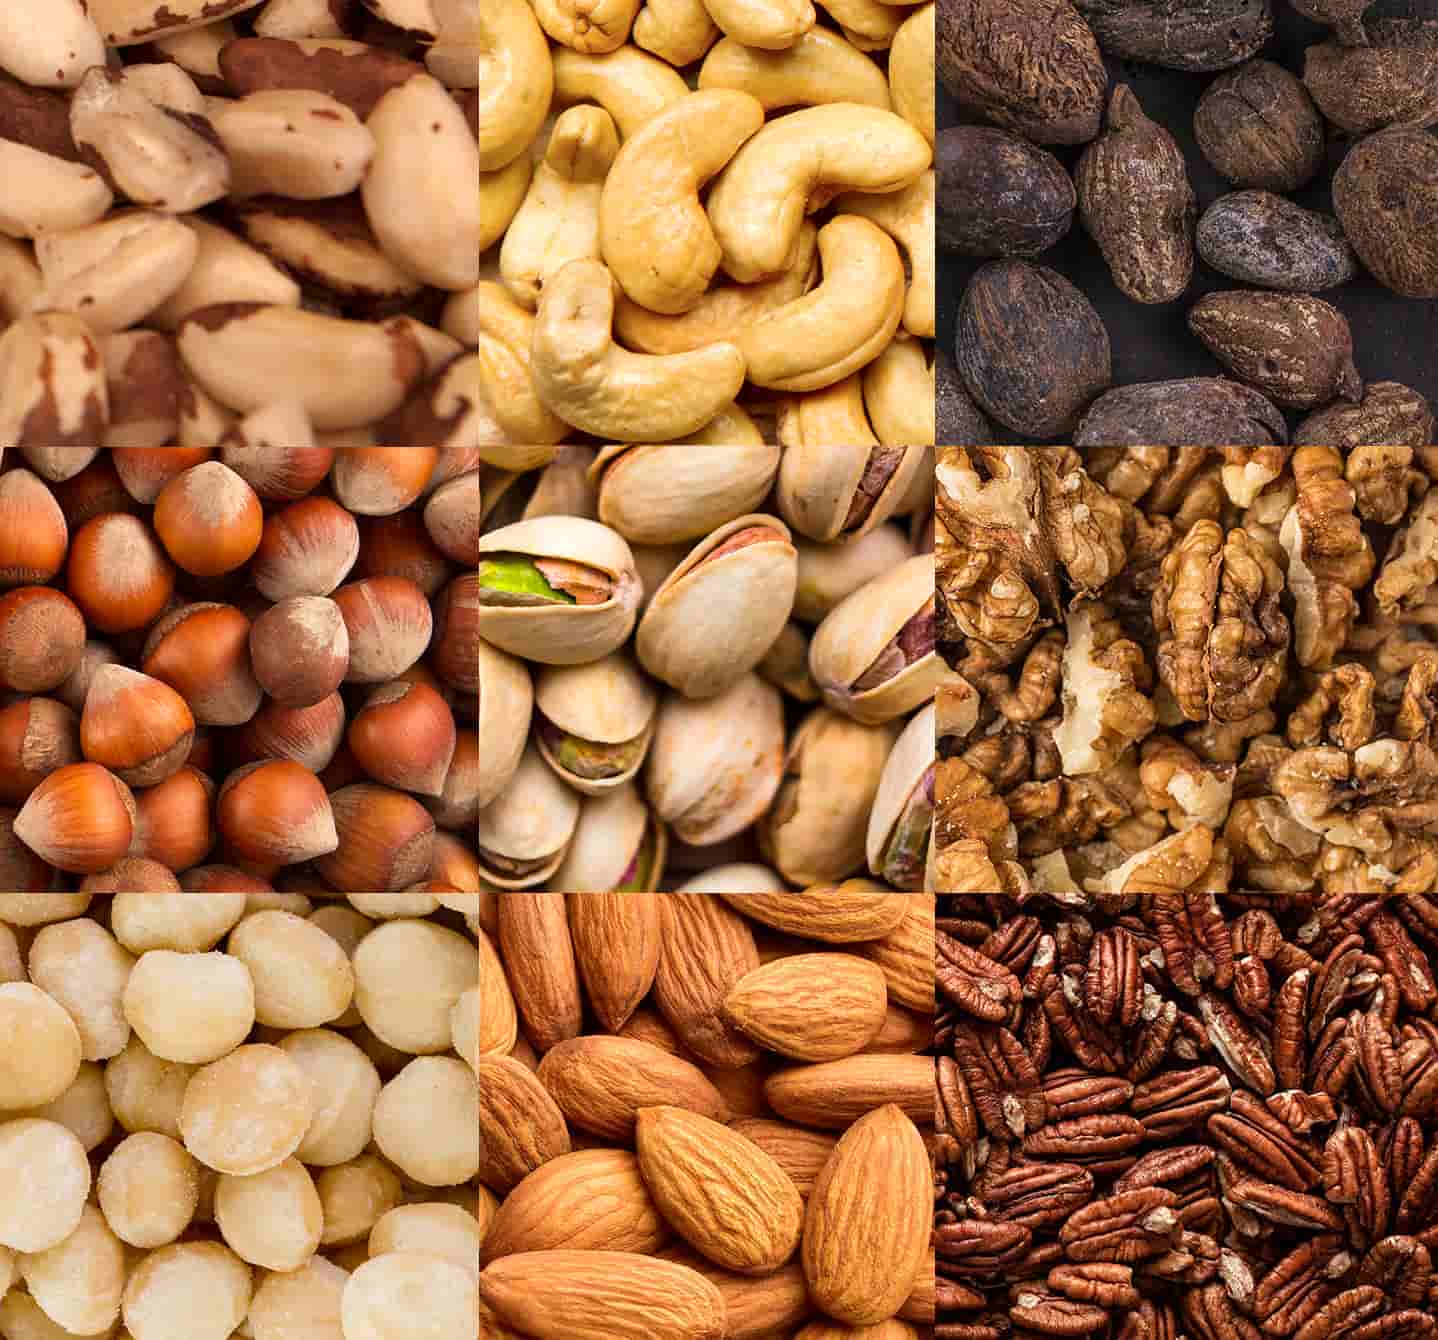 L’allergie aux noix désigne les arachides ou les fruits à coque comme les amandes, les noix du Brésil ou de macadamia, les noix de cajou, les noisettes, les pacanes, les pistaches ou les noix de Grenoble.